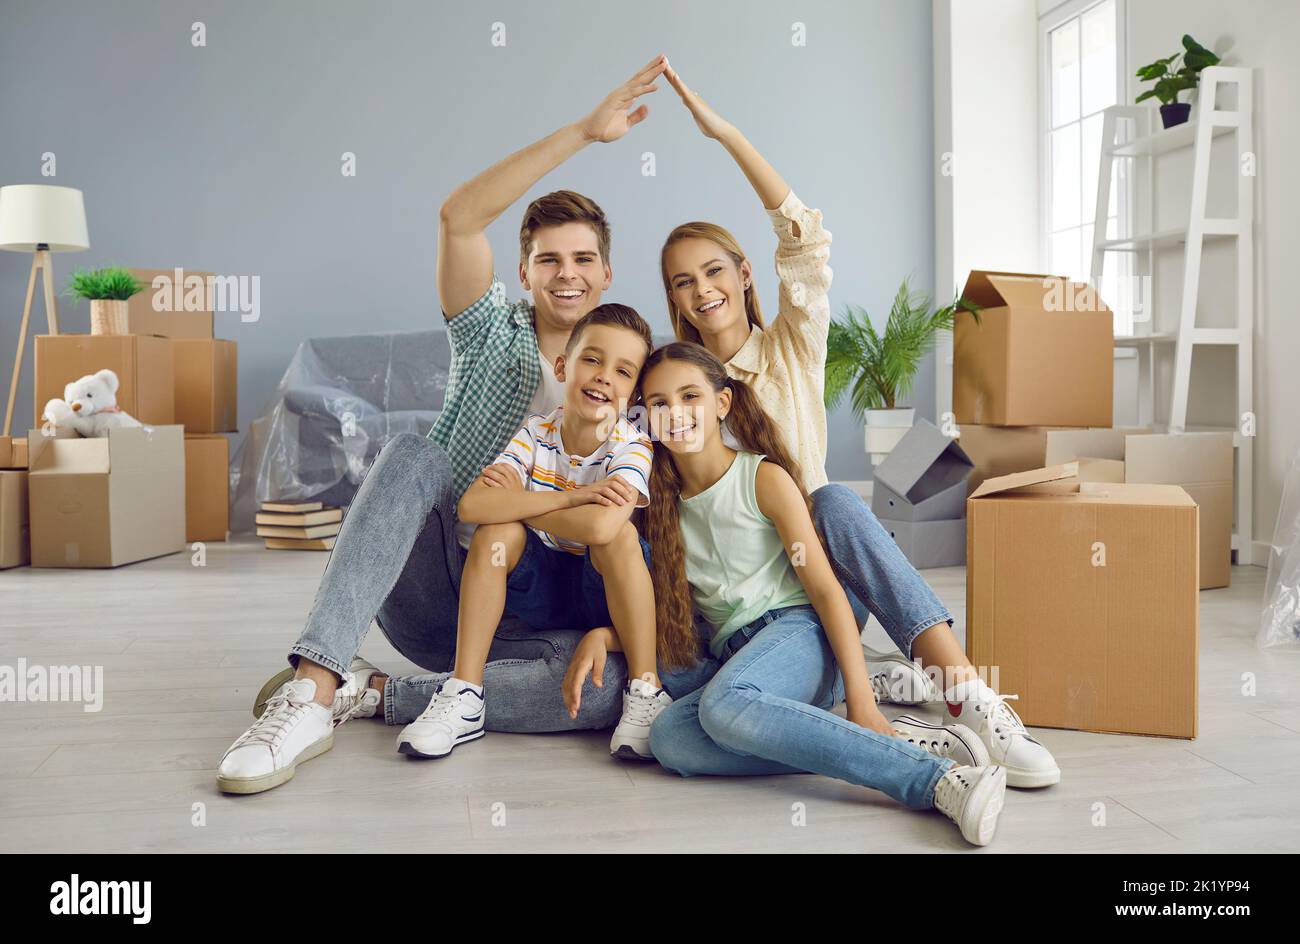 Glückliche Familie mit Kindern, die am Umzugstag unter einem symbolischen Dach in ihrem neuen Haus sitzen Stockfoto